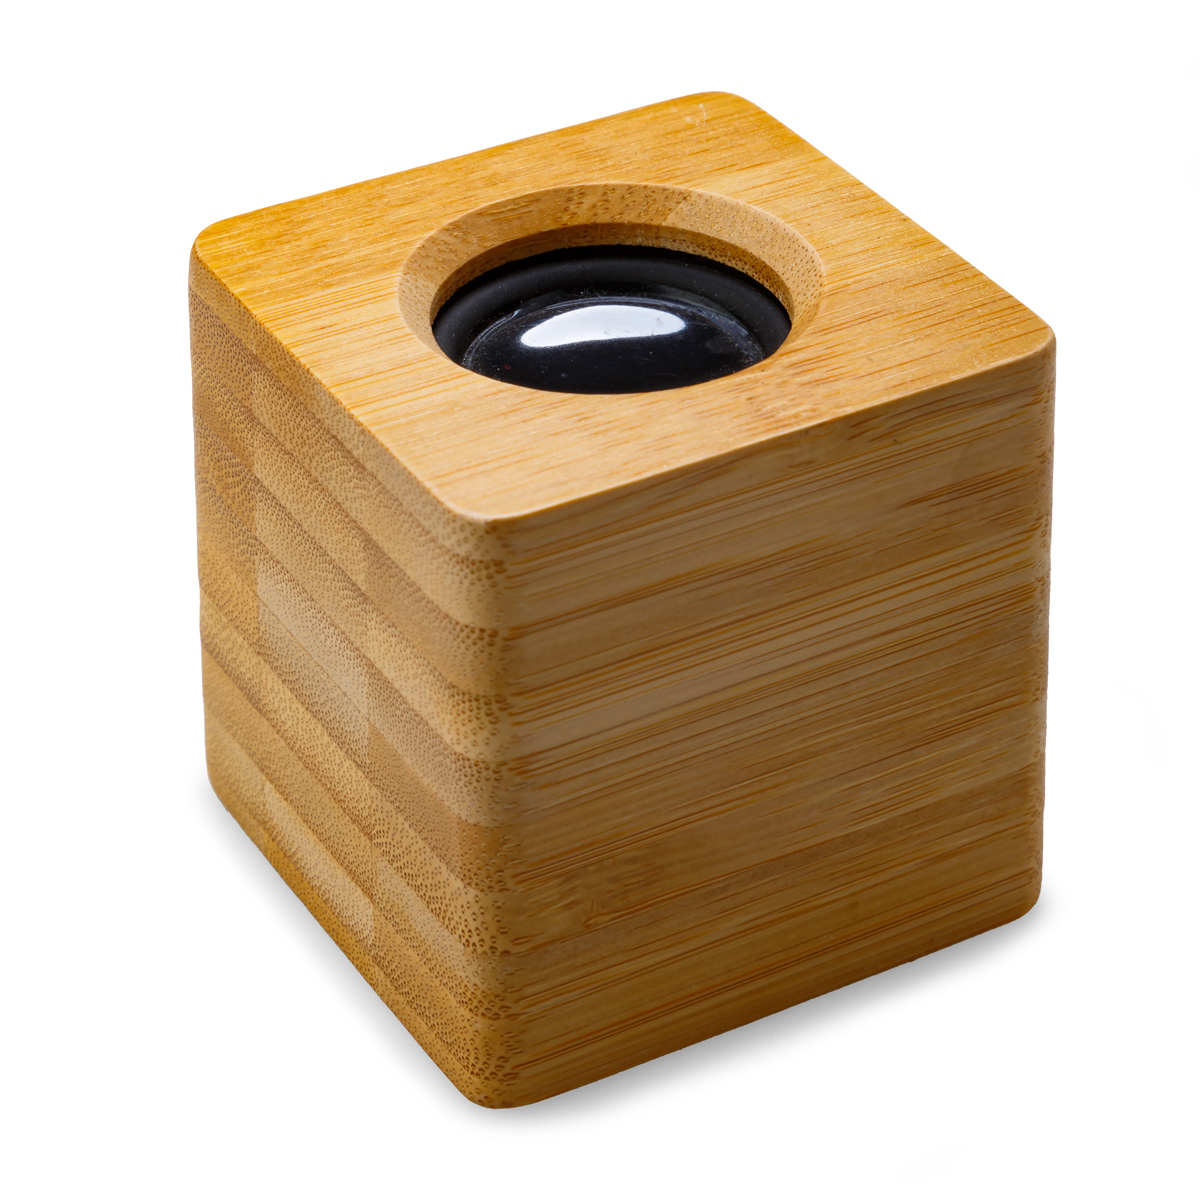 Laxo Bamboo Speaker Product Image